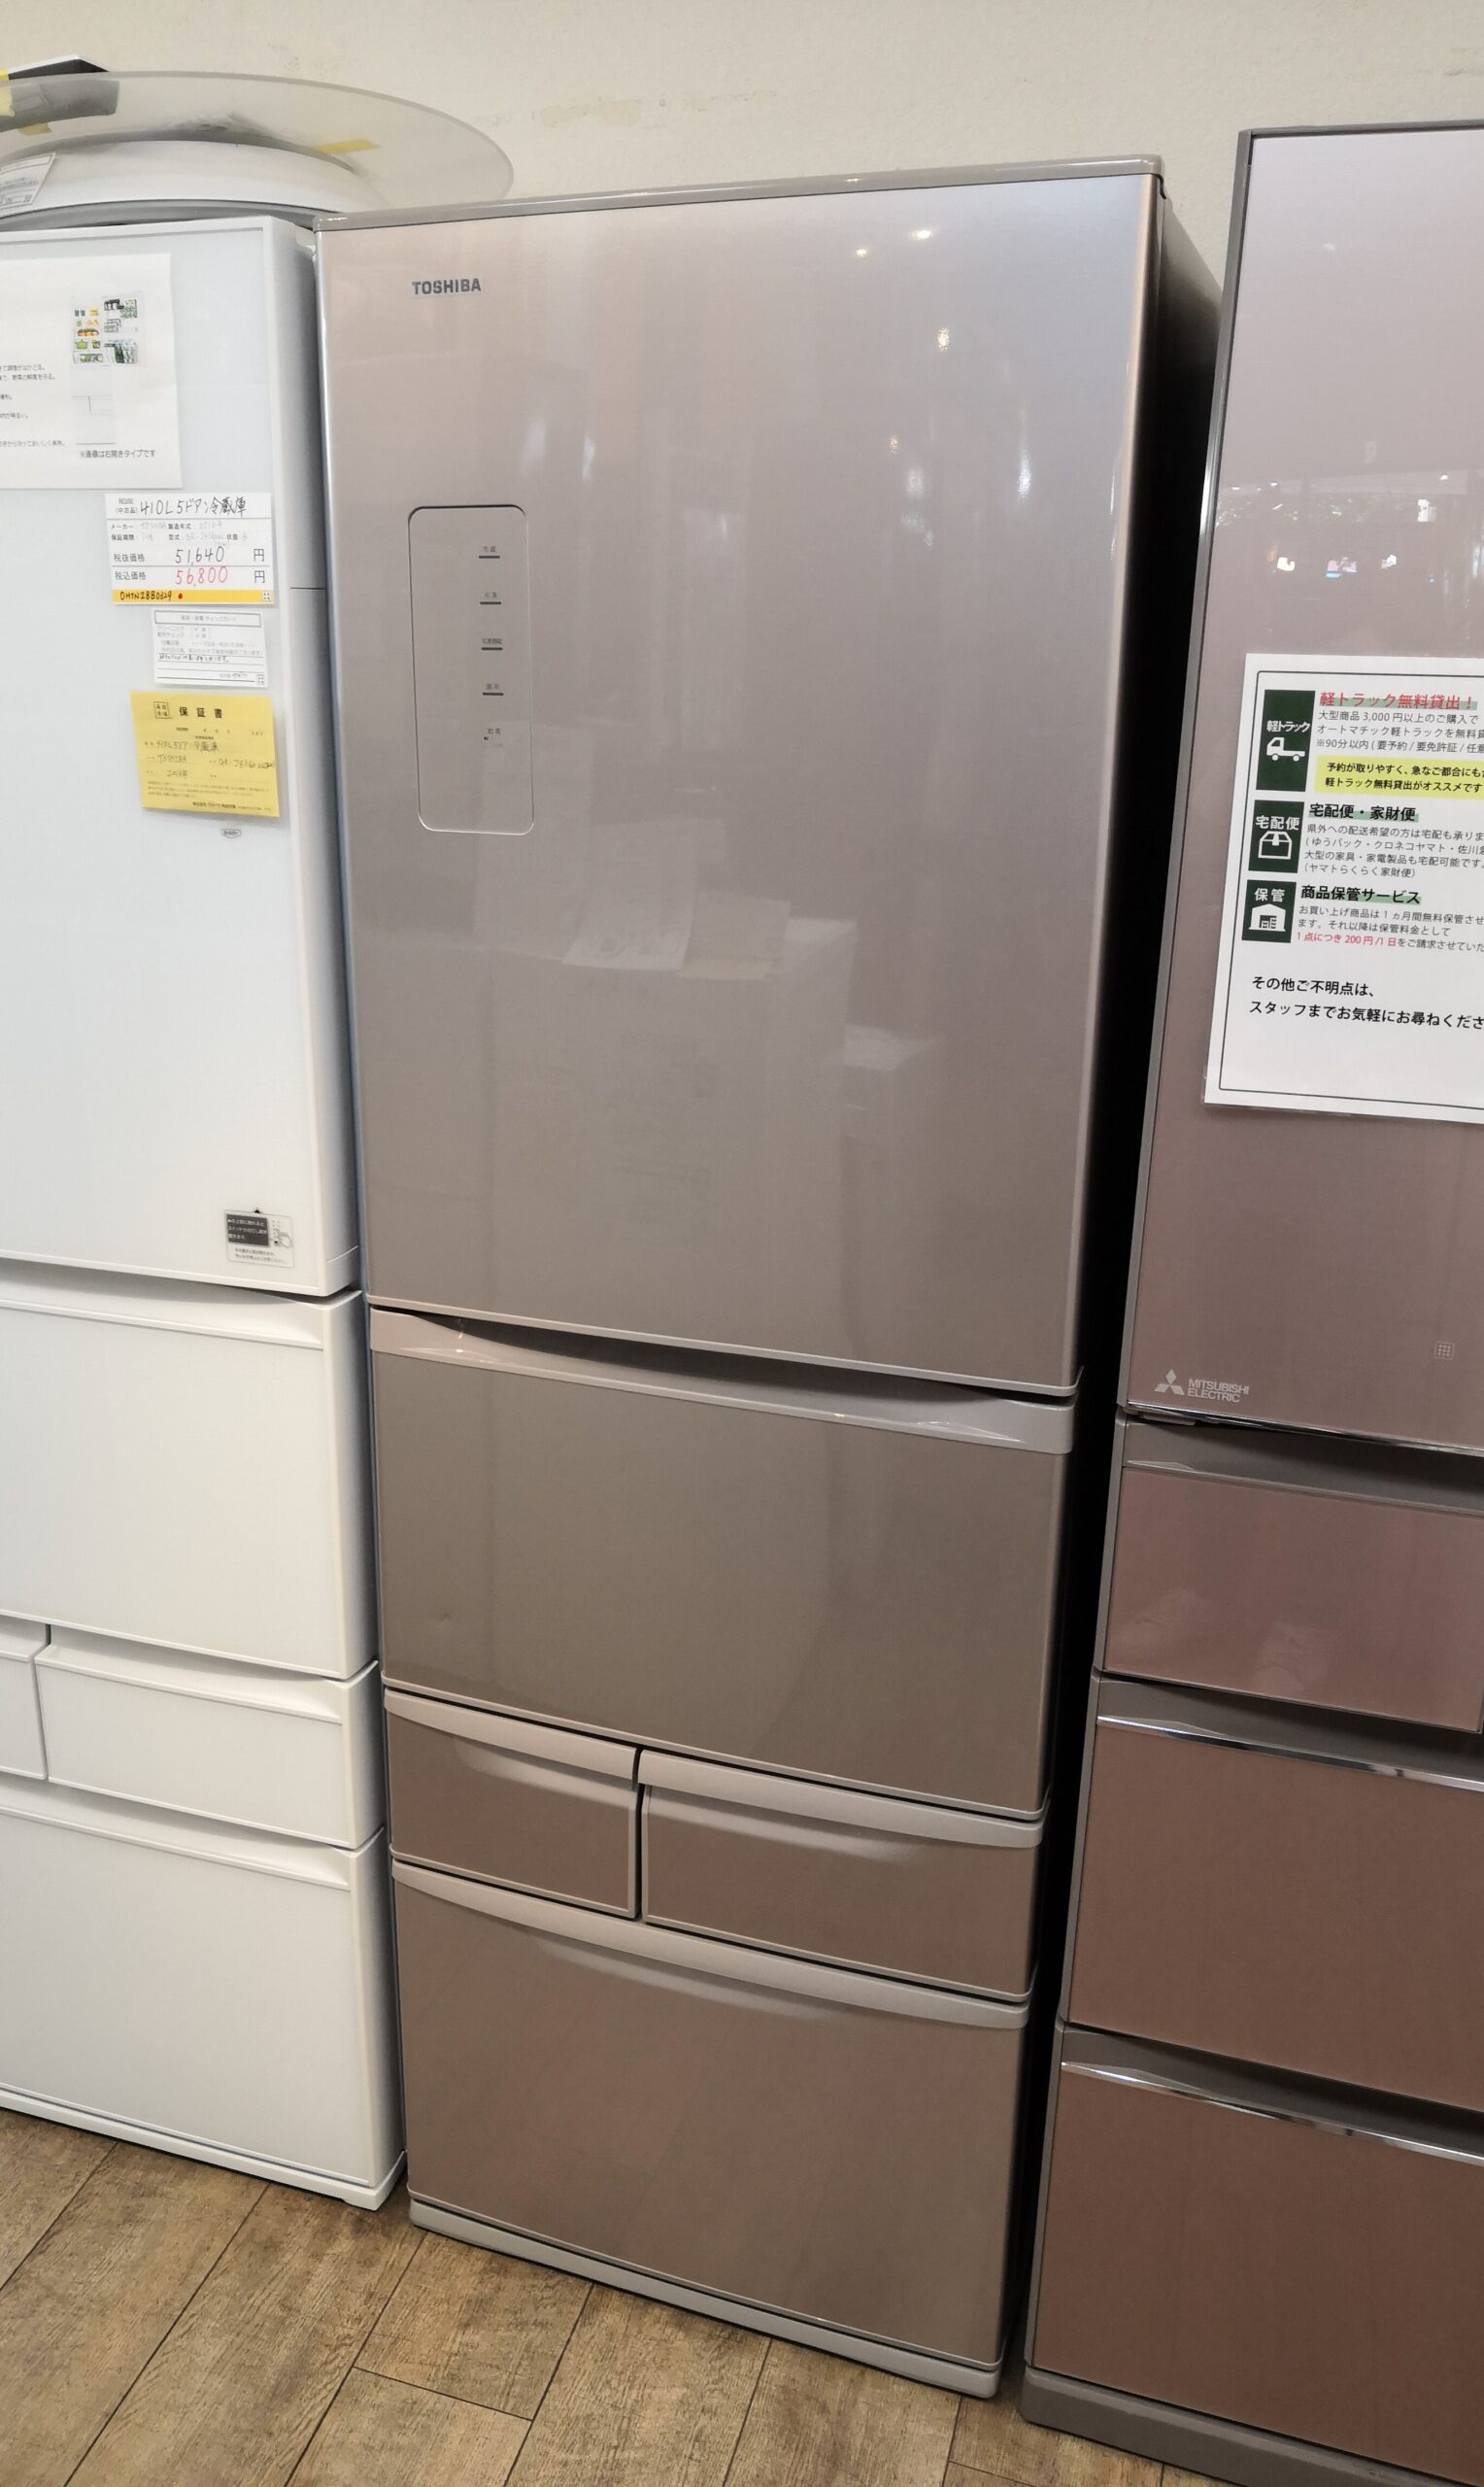 東芝・ノンフロン6ドア冷凍冷蔵庫 427ℓ スマートタッチオープンドア 